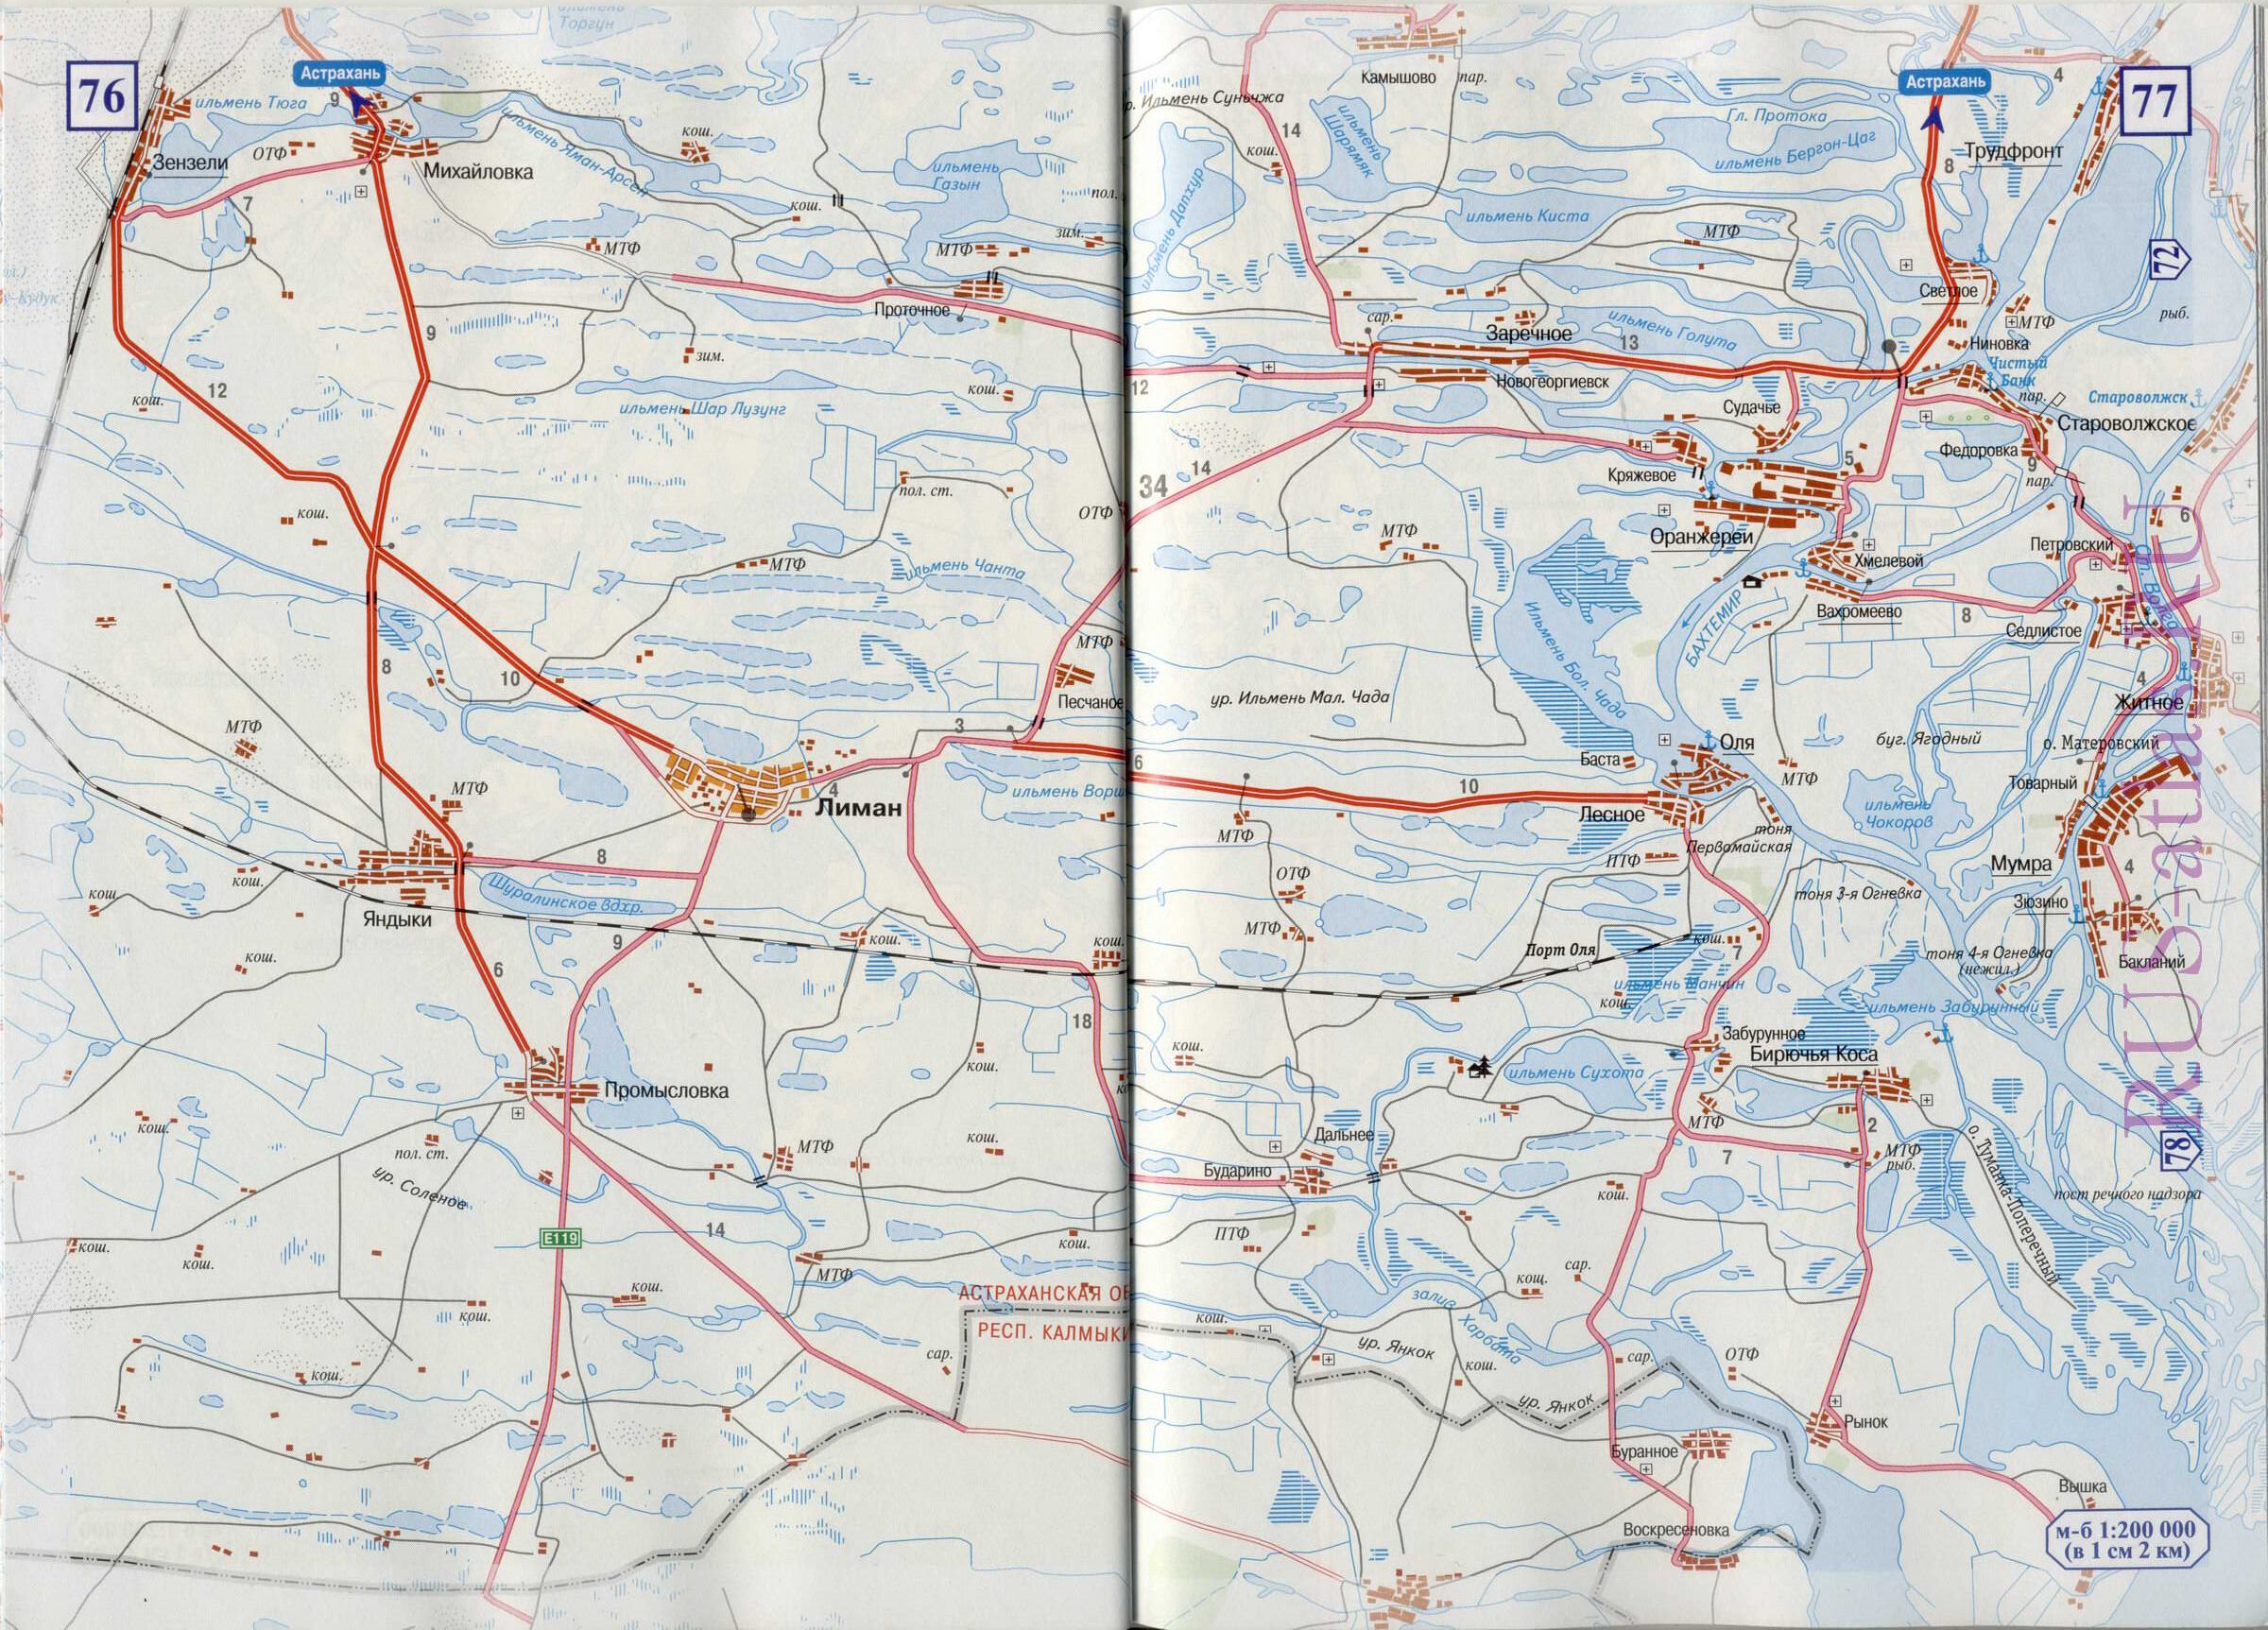 Карта дороги от Астрахани до республики Калмыкия. Карта схема магистрали Е119 от Астрахани до границы Калмыкии. Карта трассы от Астрахани на Калмакию, A2 - 